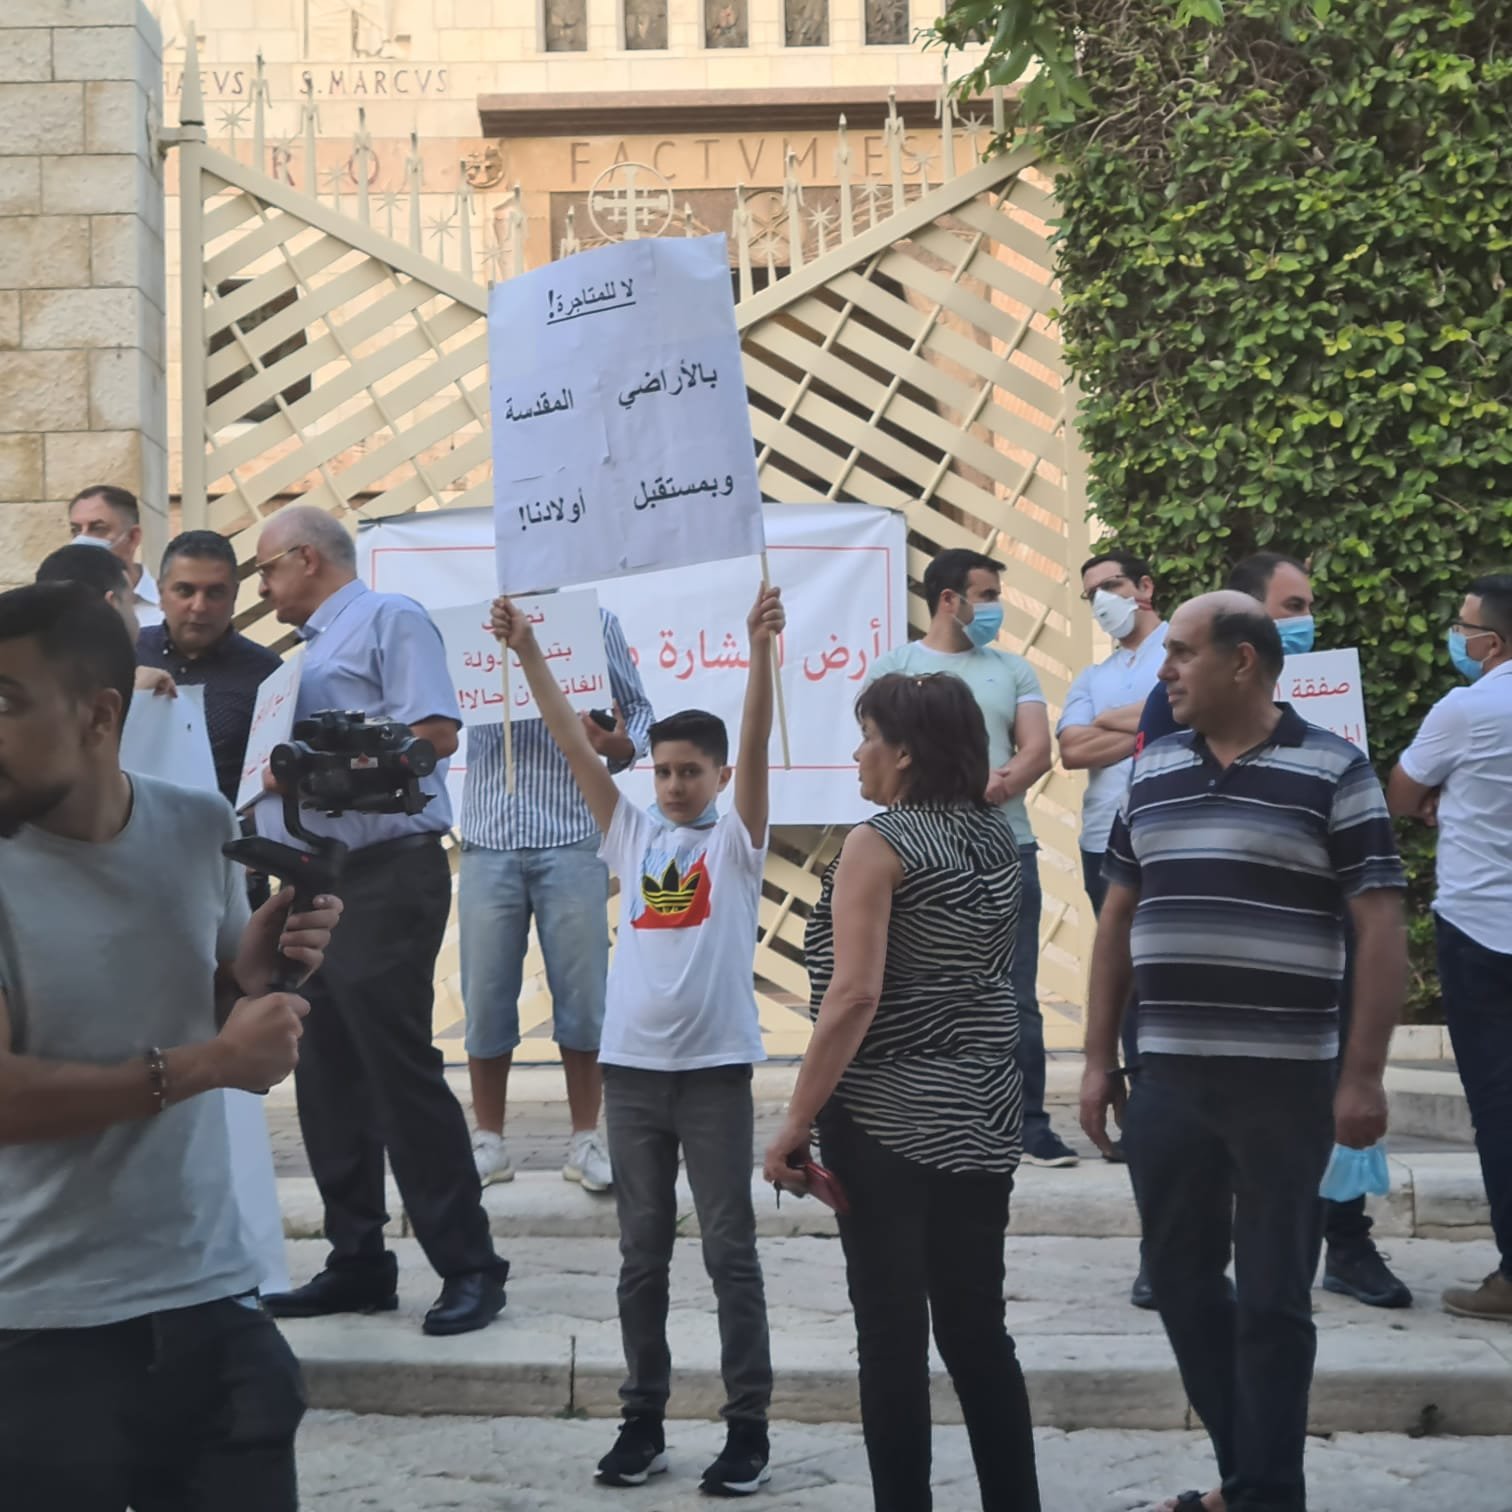 مباشر، الناصرة: مسيرة شموع وتظاهرة احتجاجية ضد صفقات بيع الاراضي بعنوان "ارض البشارة مش للتجارة"-15